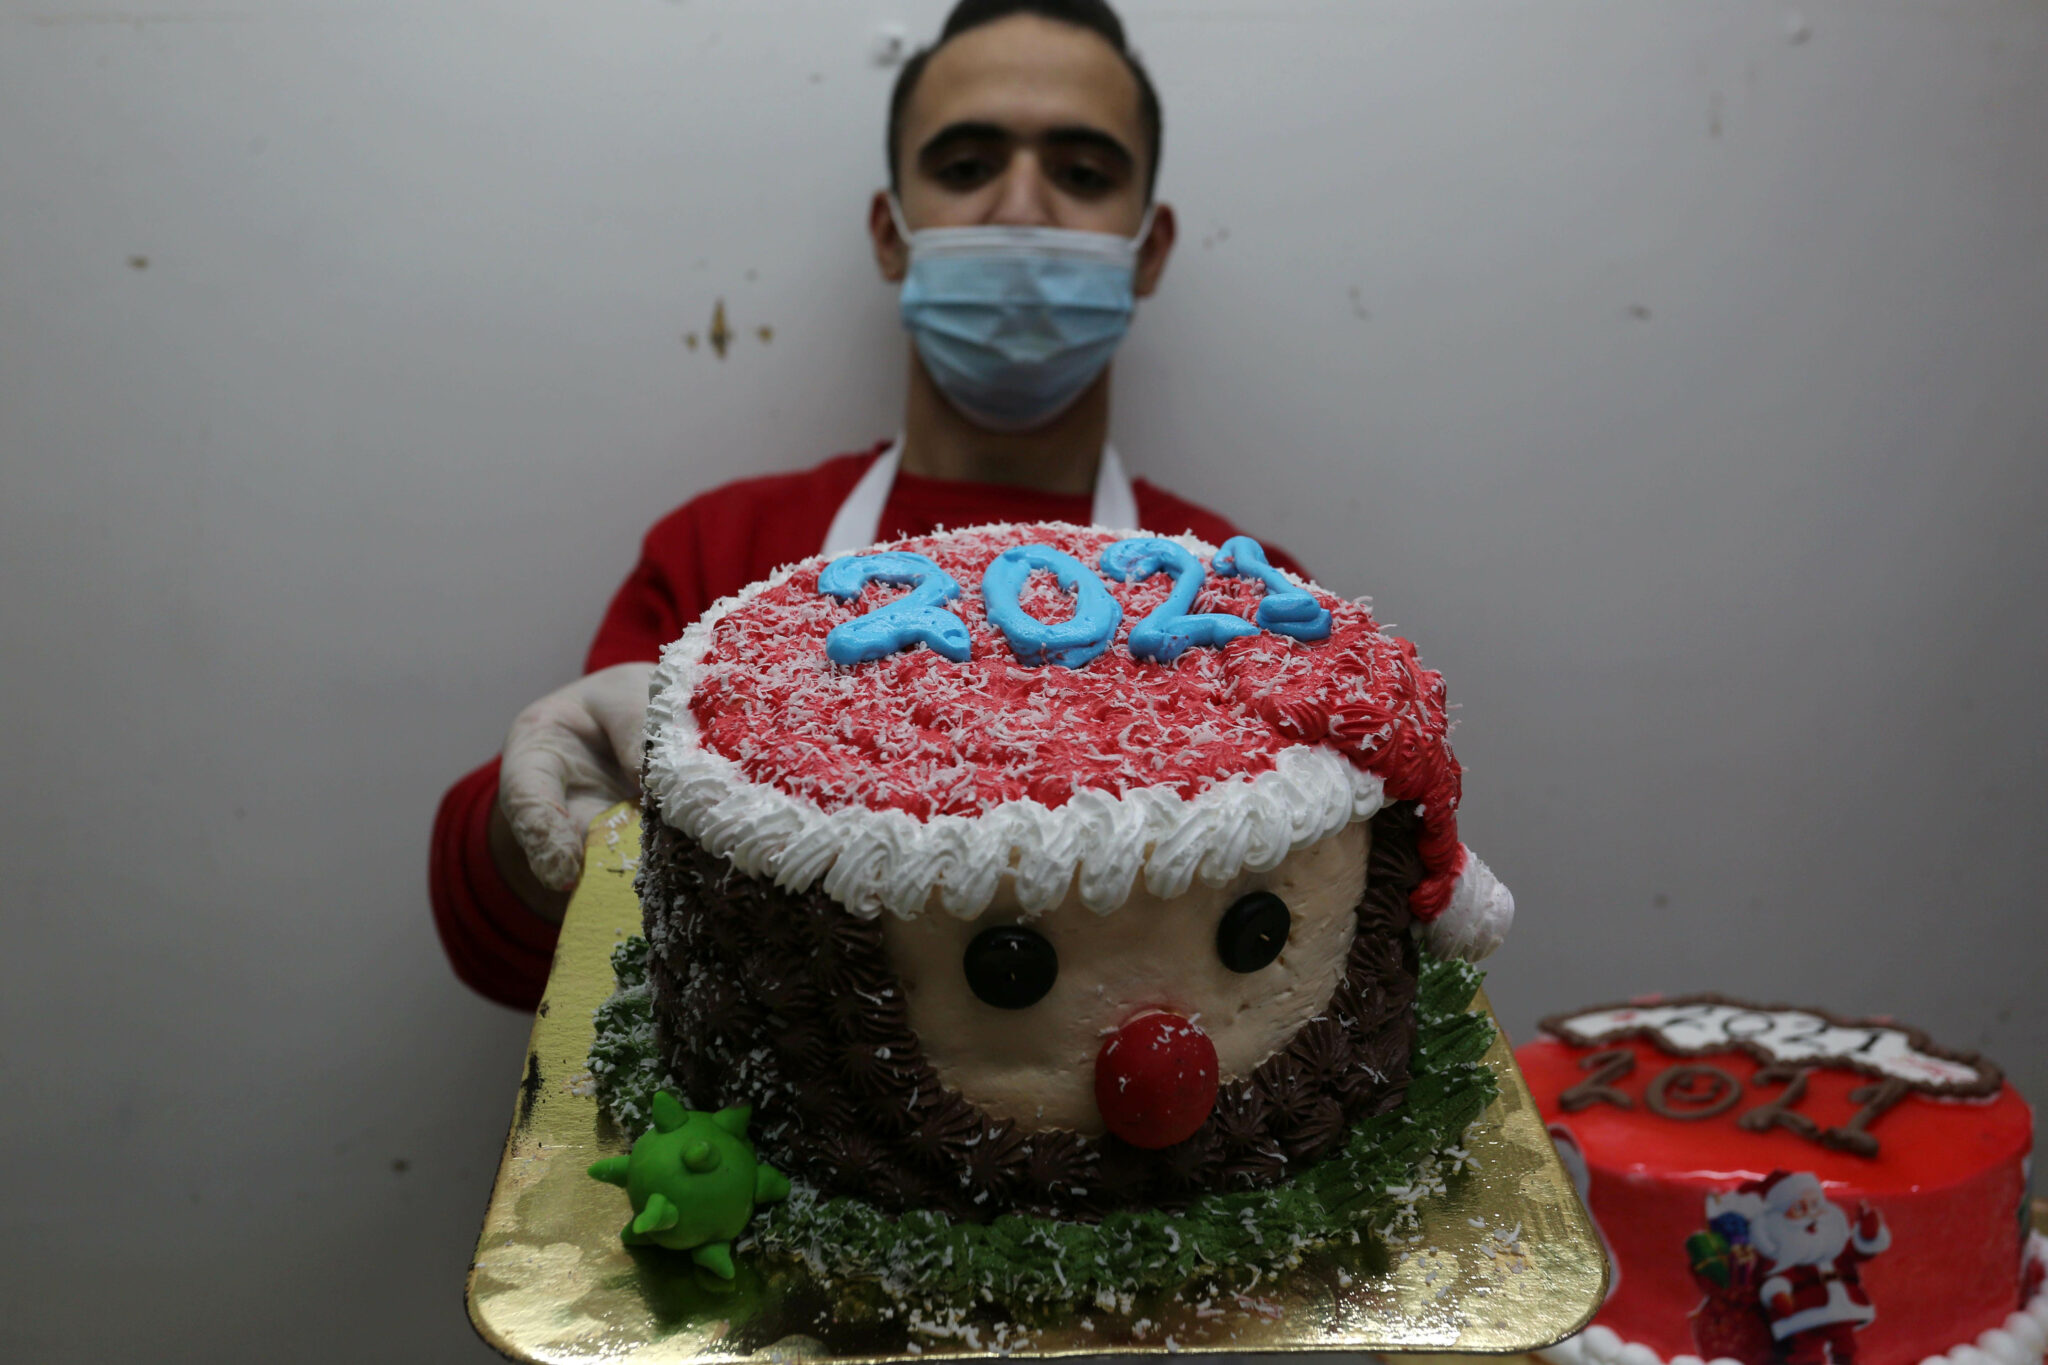 Торт с изображением Санта-Клауса. Фото Ashraf Amra/APA Images via ZUMA Wire/Scanpix/Leta